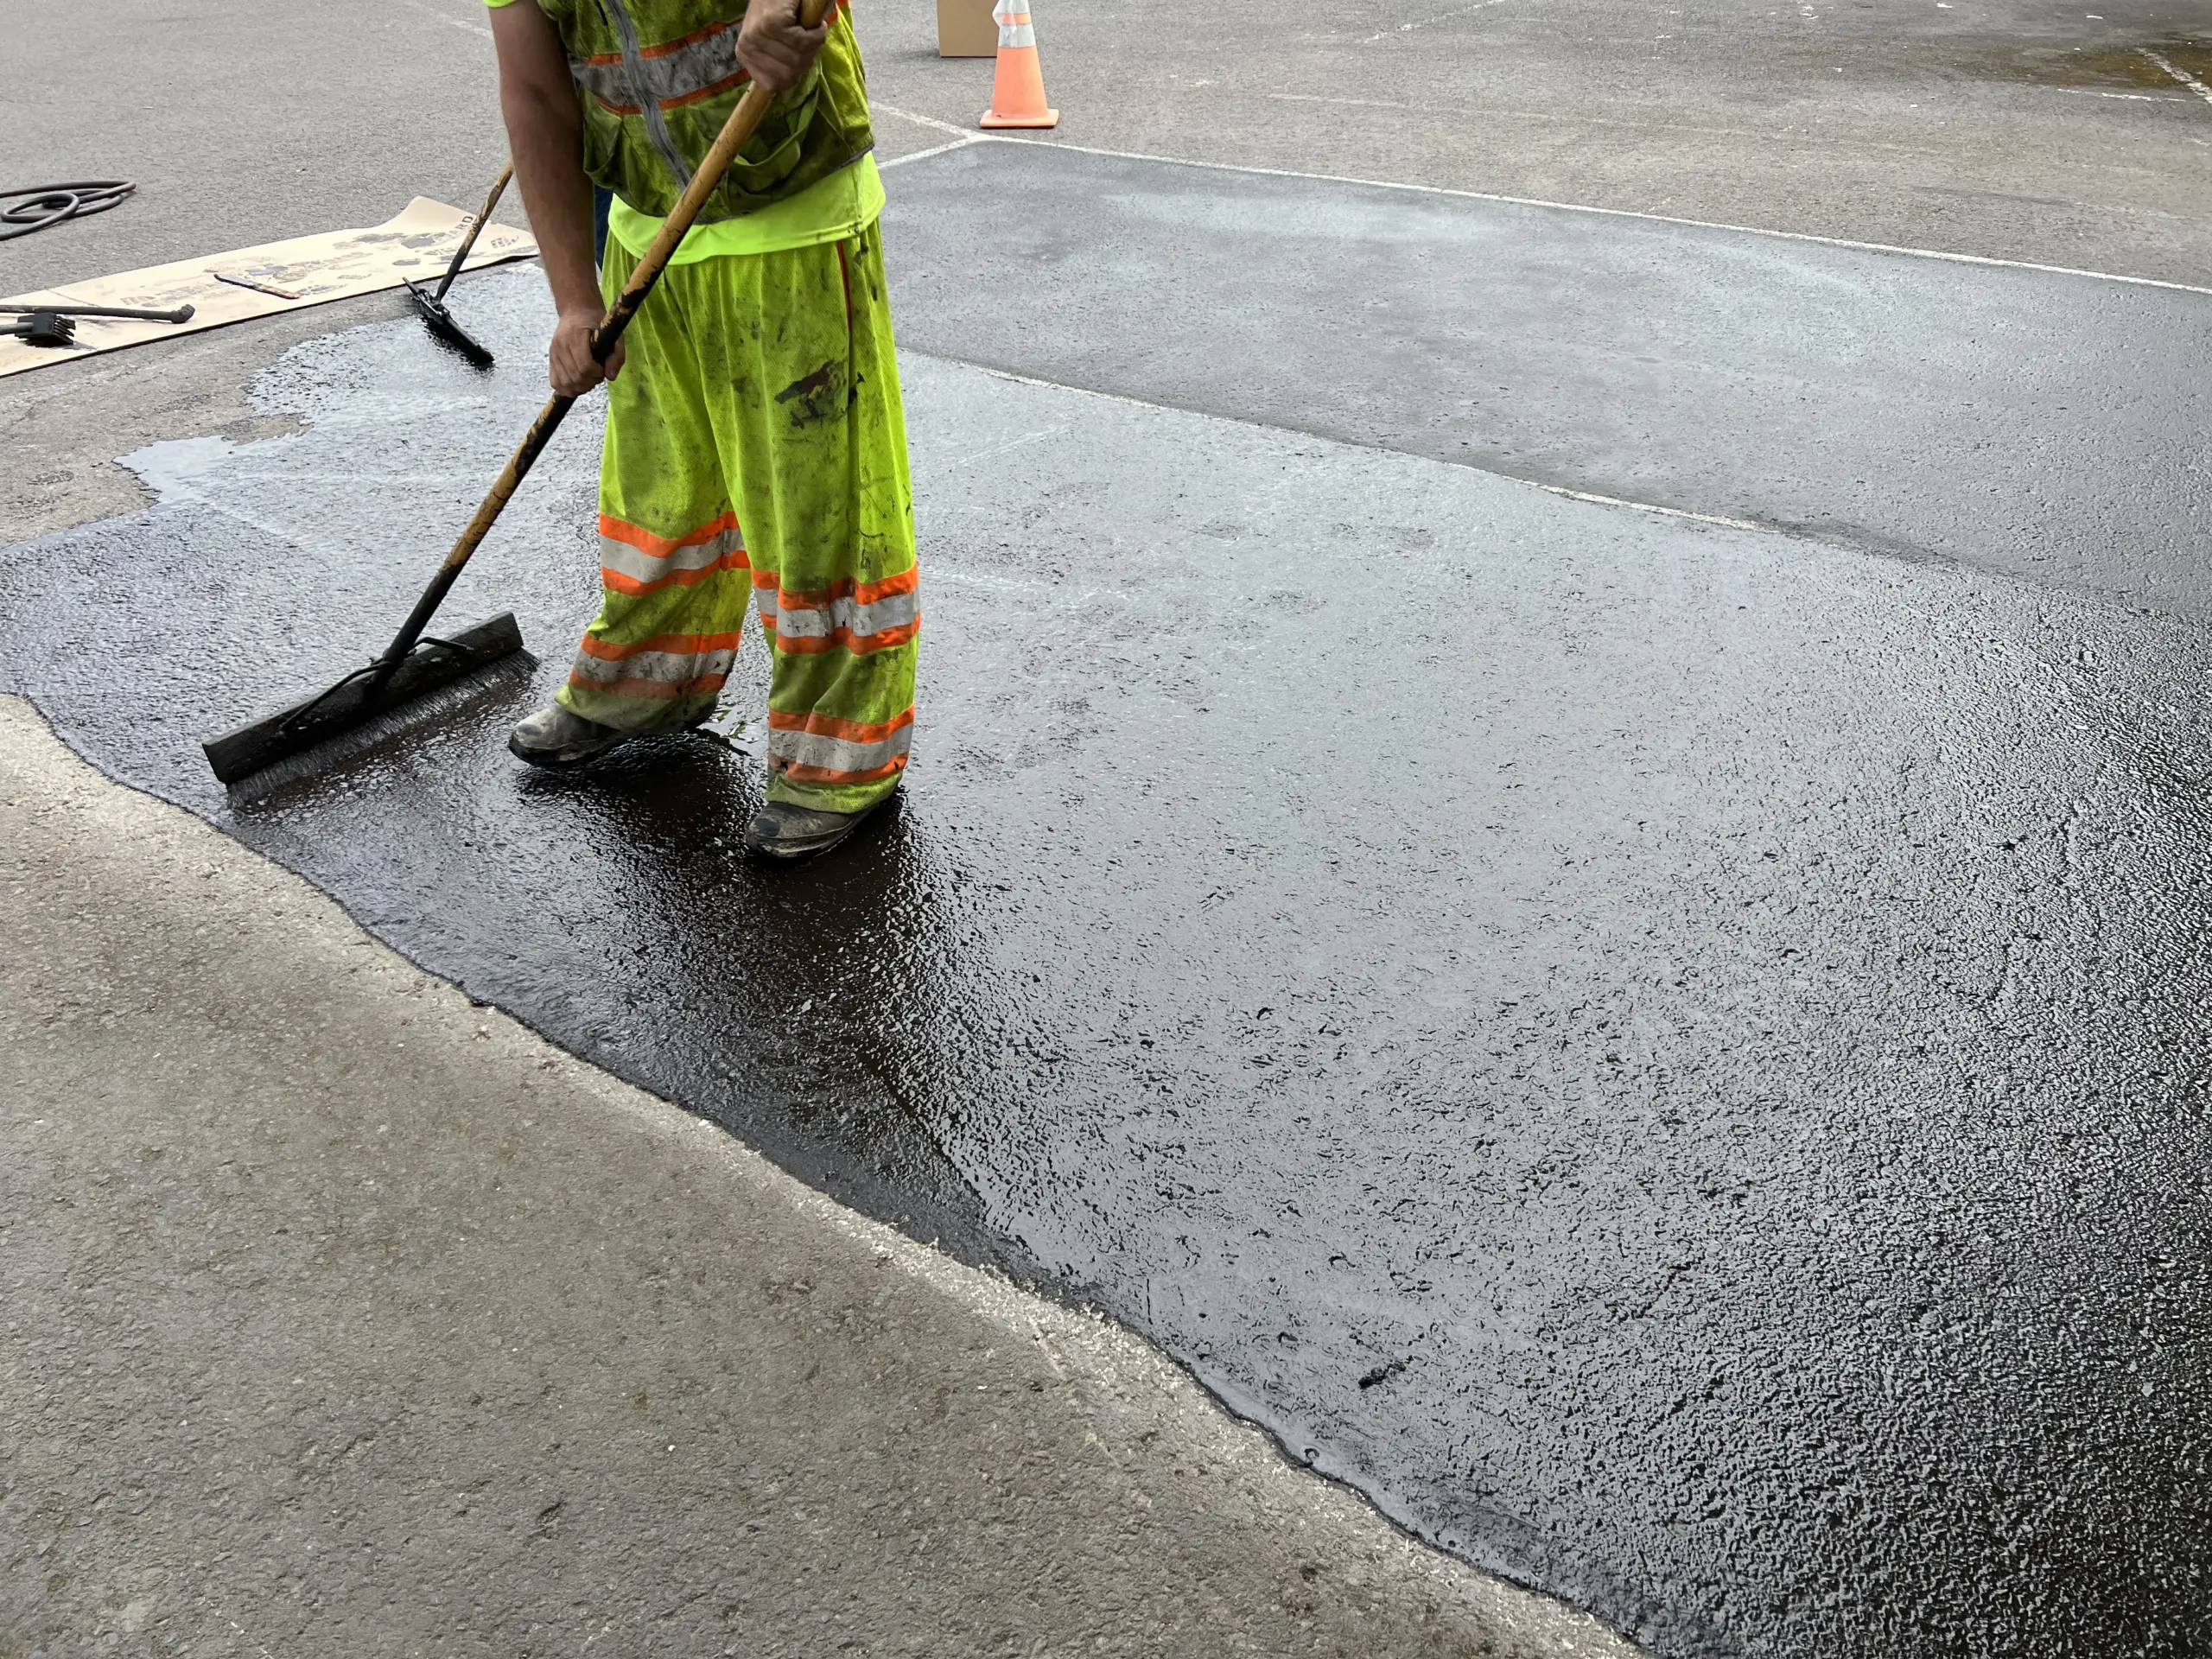 applying sealer pigment via broom on pavement for parkinglot